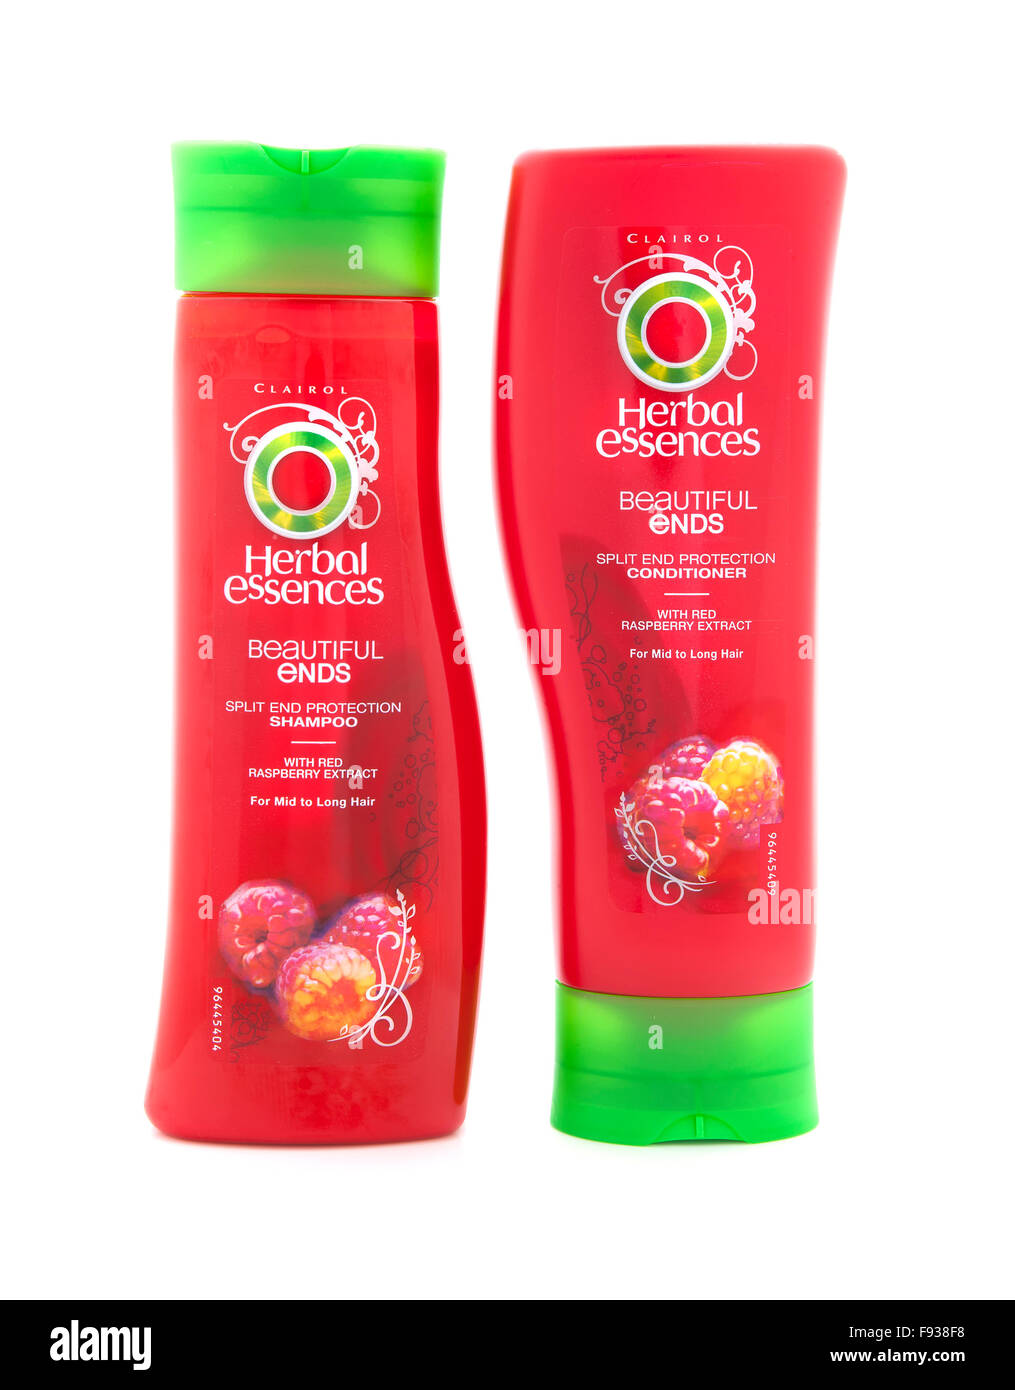 Clairol Herbal Essences schöne endet, Shampoo und Conditioner auf weißem Hintergrund Stockfoto